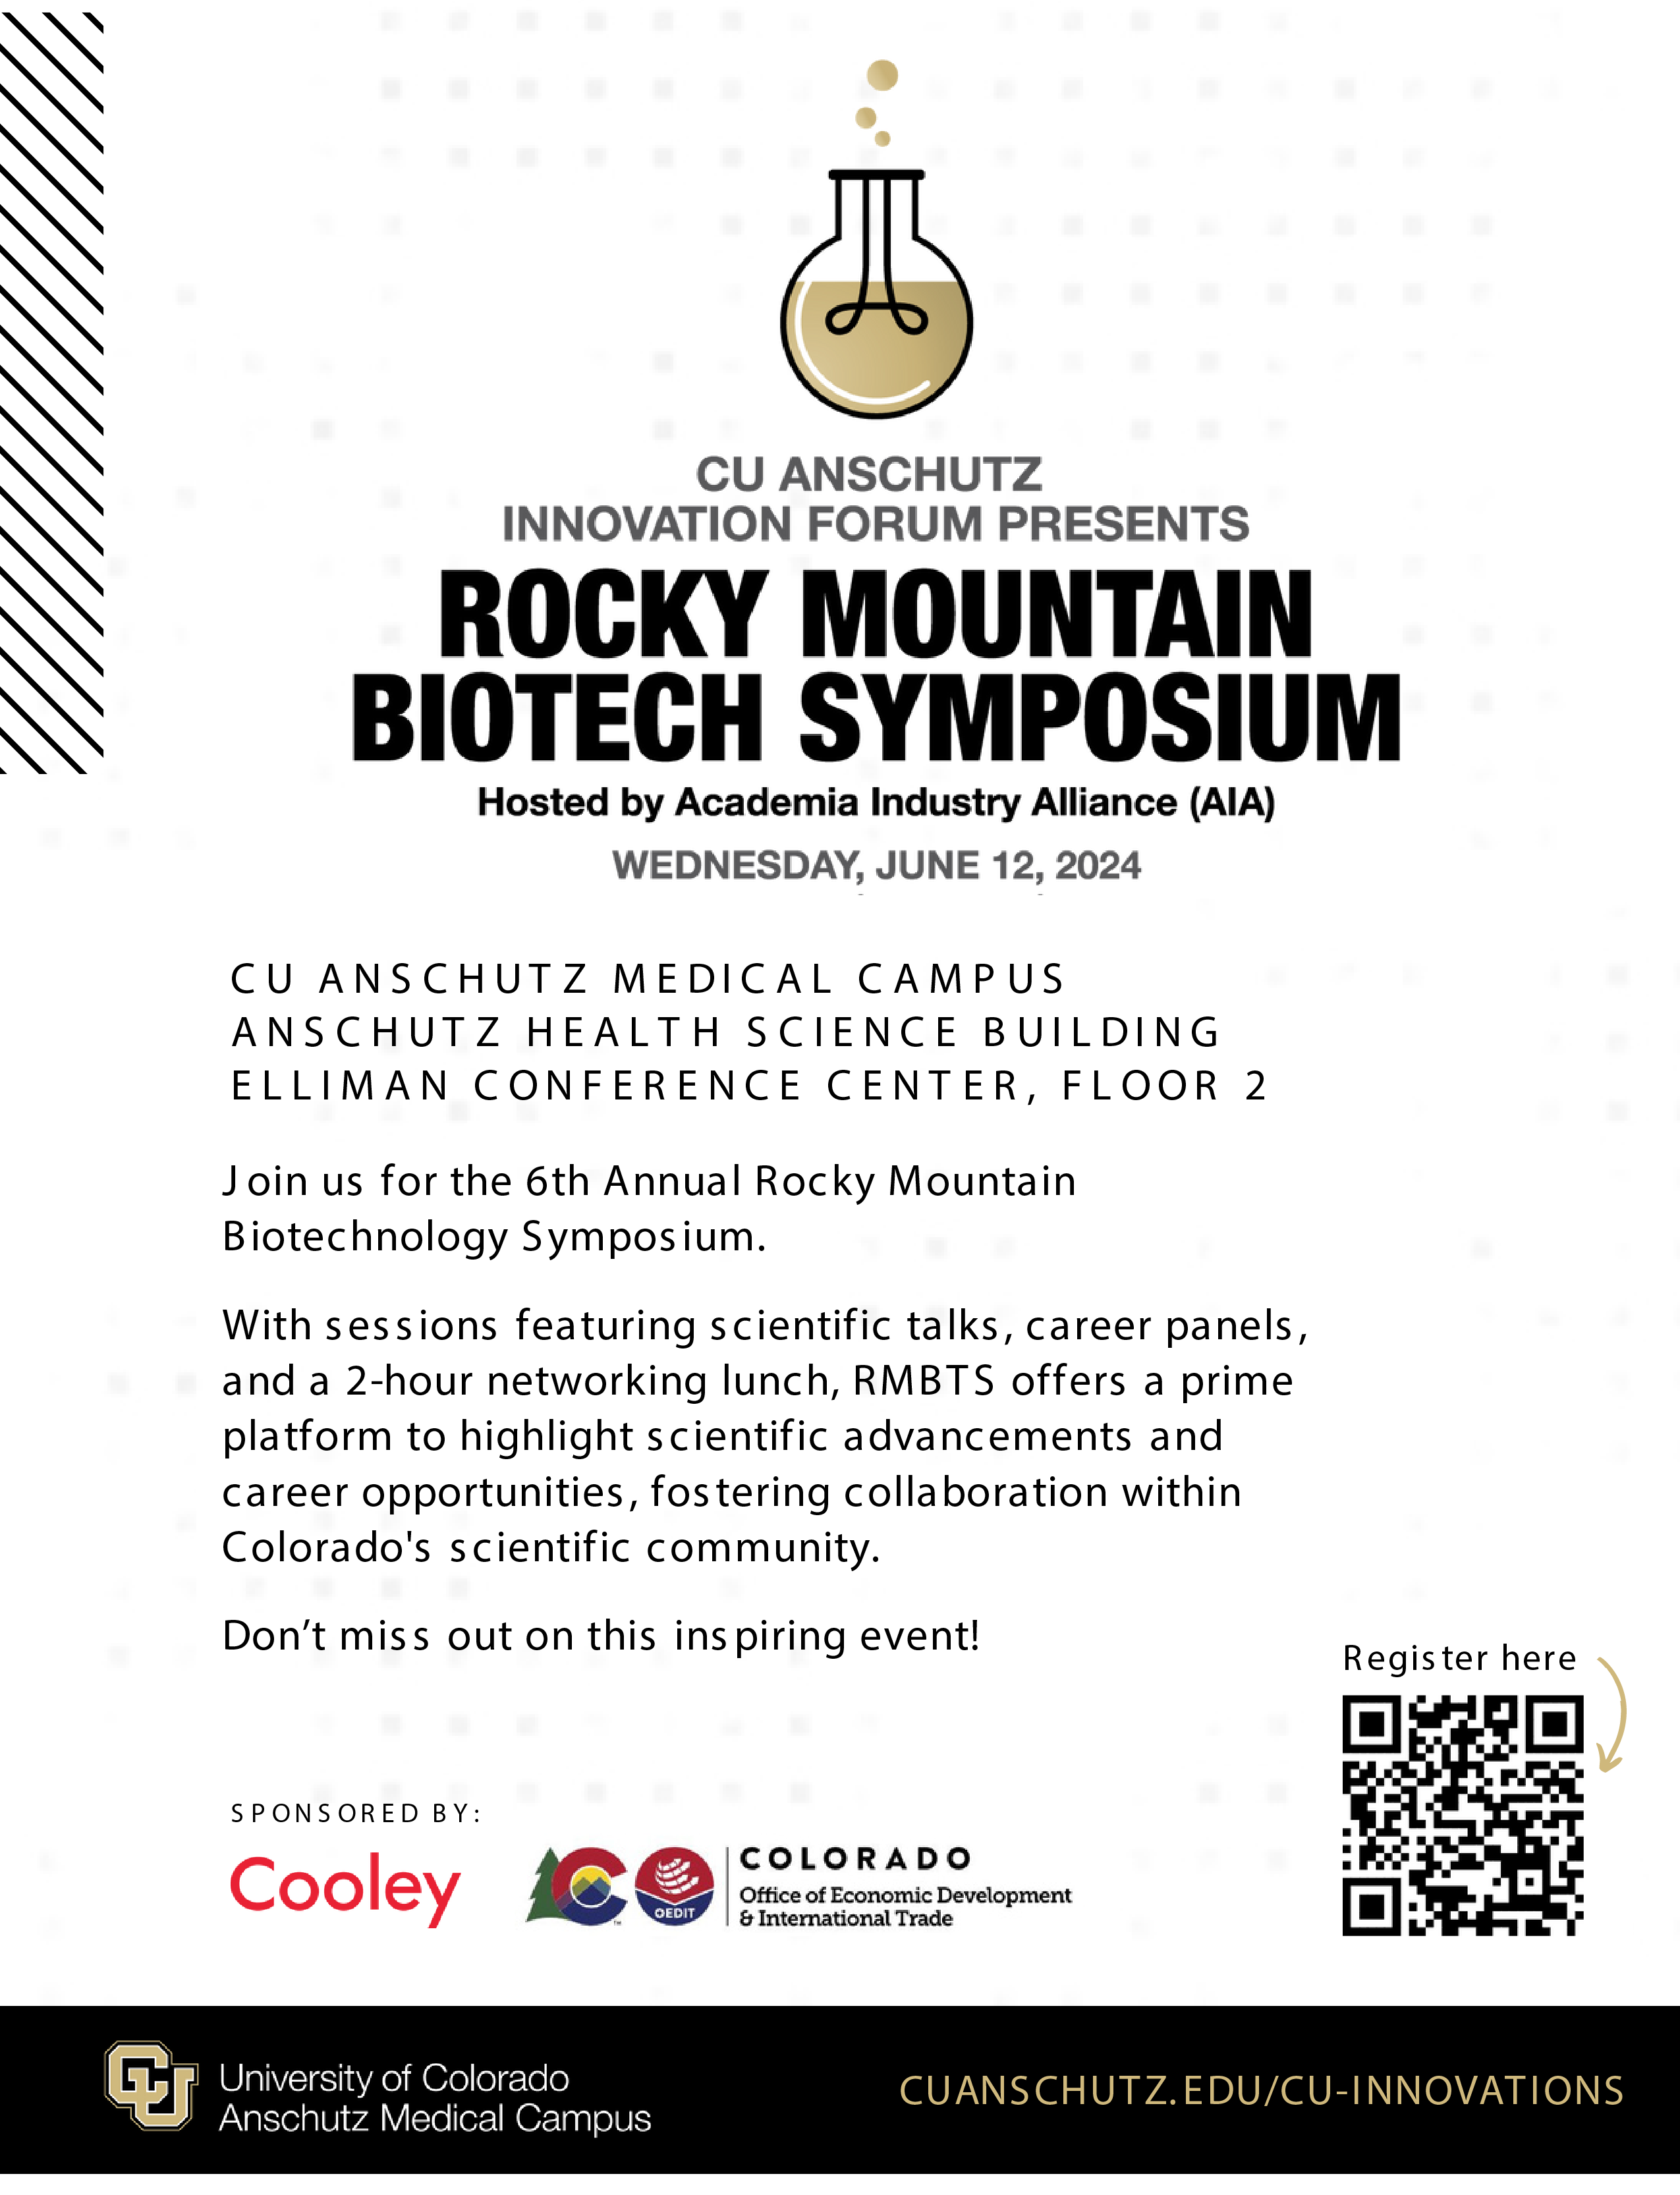 Rocky Mountain Biotech Symposium Flyer